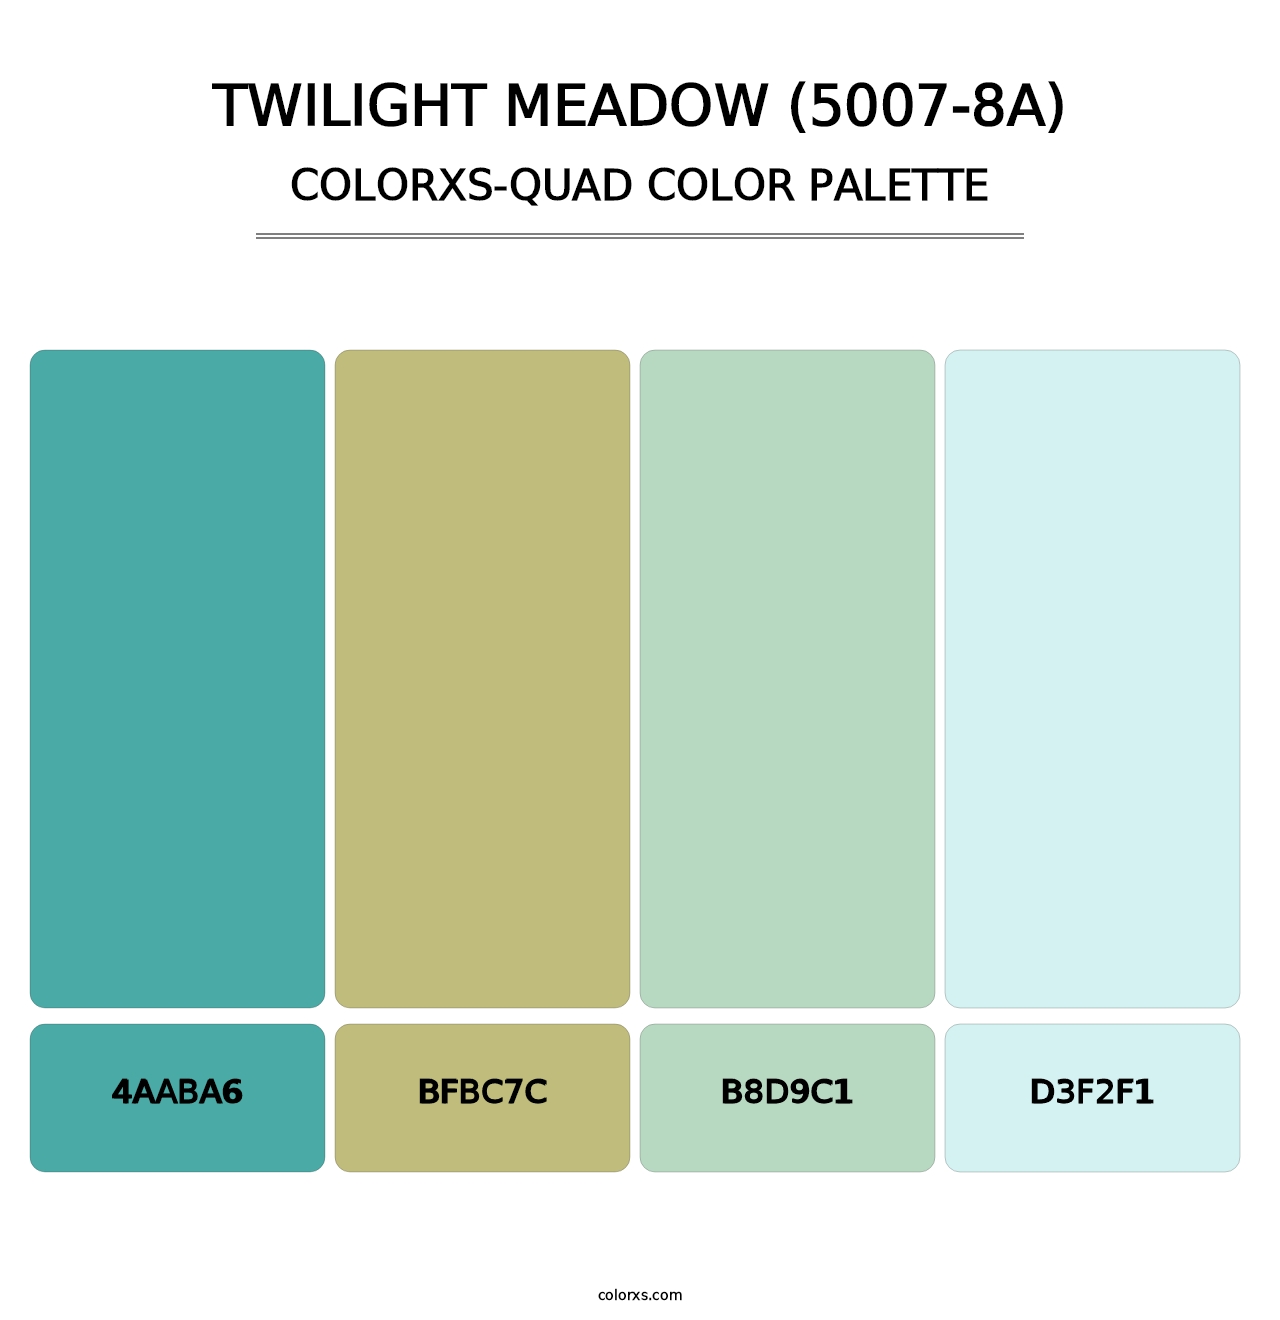 Twilight Meadow (5007-8A) - Colorxs Quad Palette